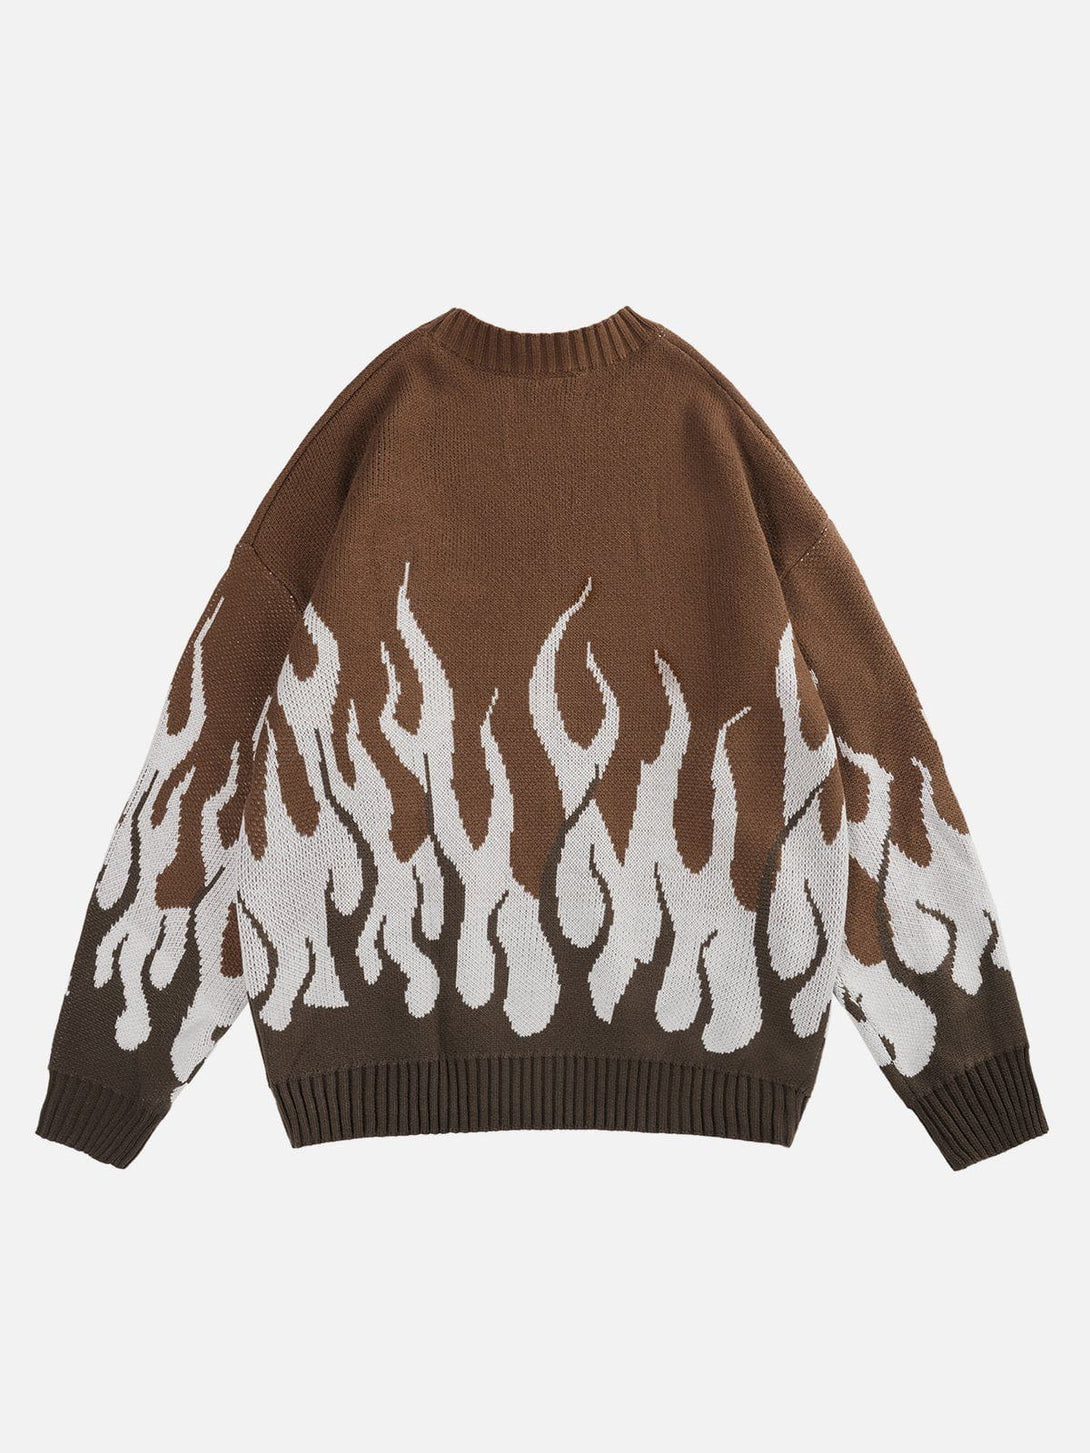 AlanBalen® - Flame Print Sweater AlanBalen